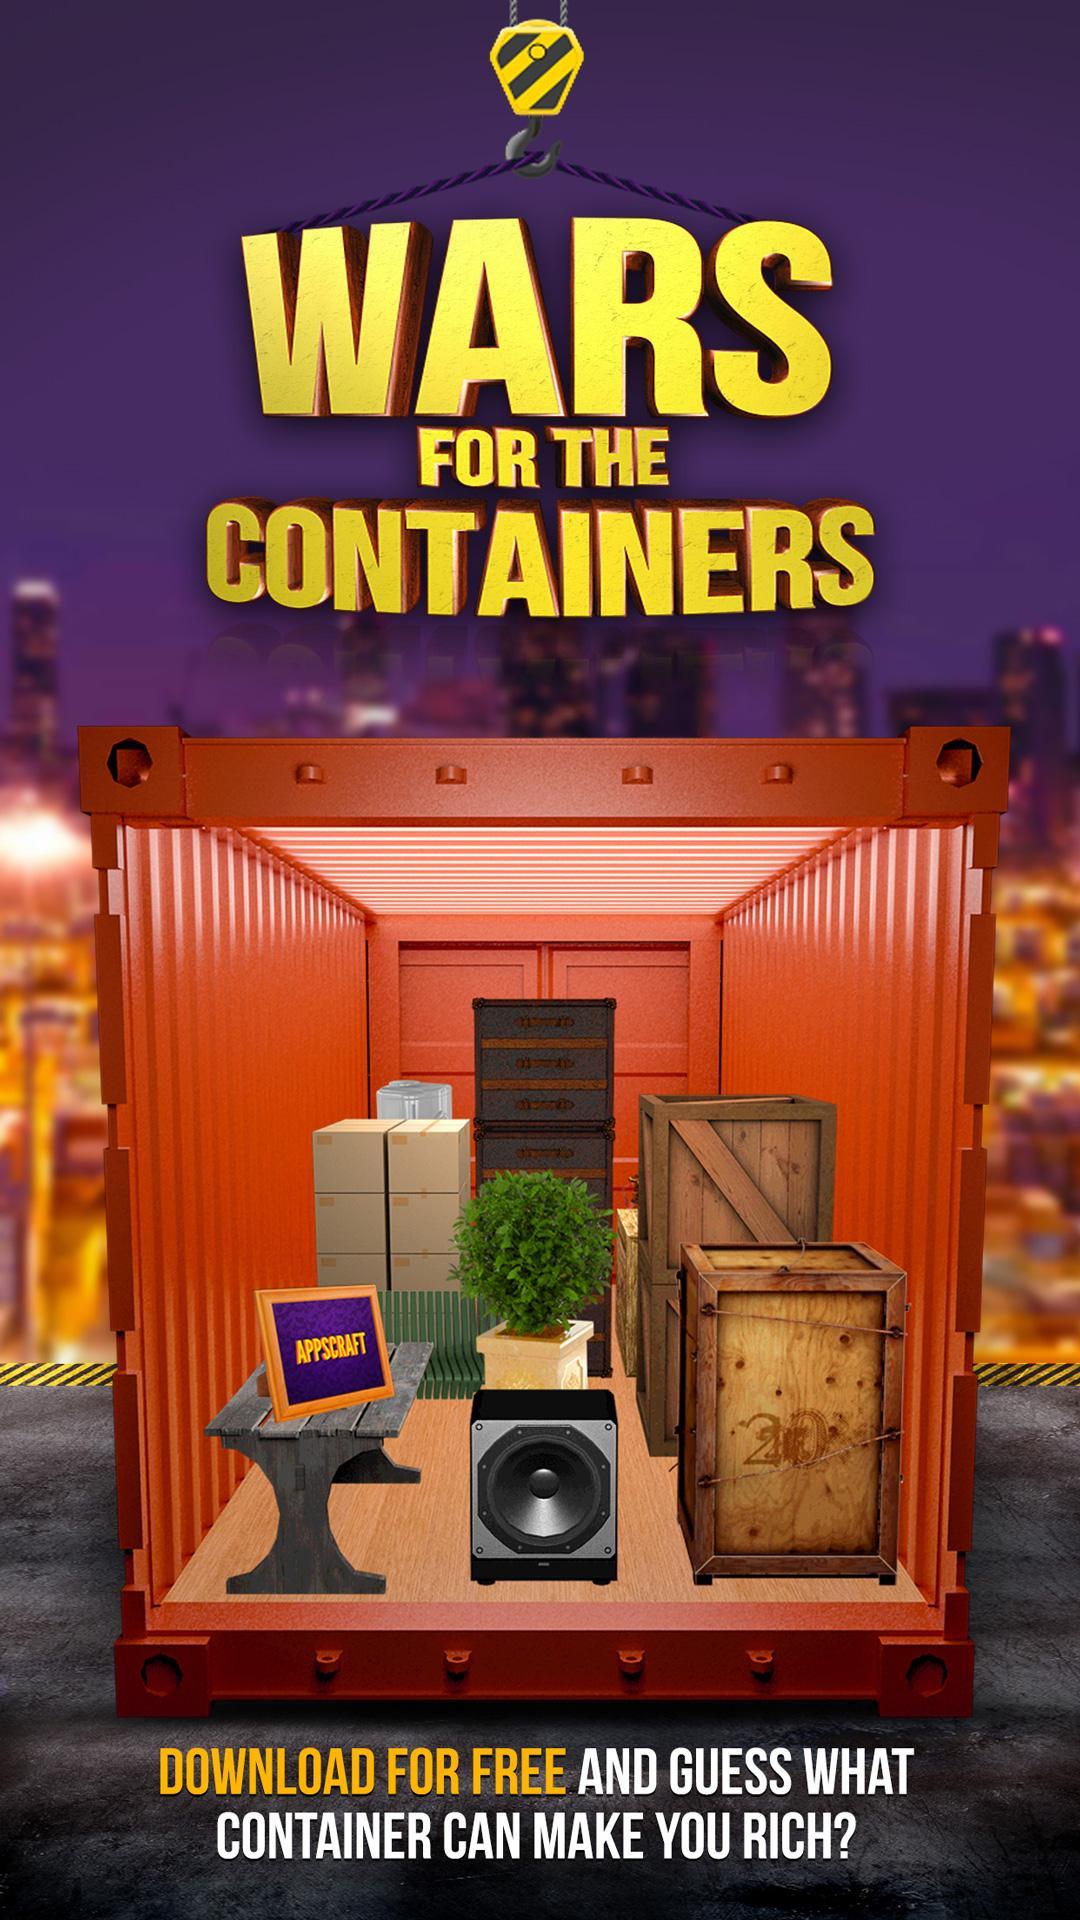 Битвы за контейнеры лучшее. Битва за контейнеры. Шоу контейнеры. Битва за контейнеры игра. Битва за контейнеры Дискавери.